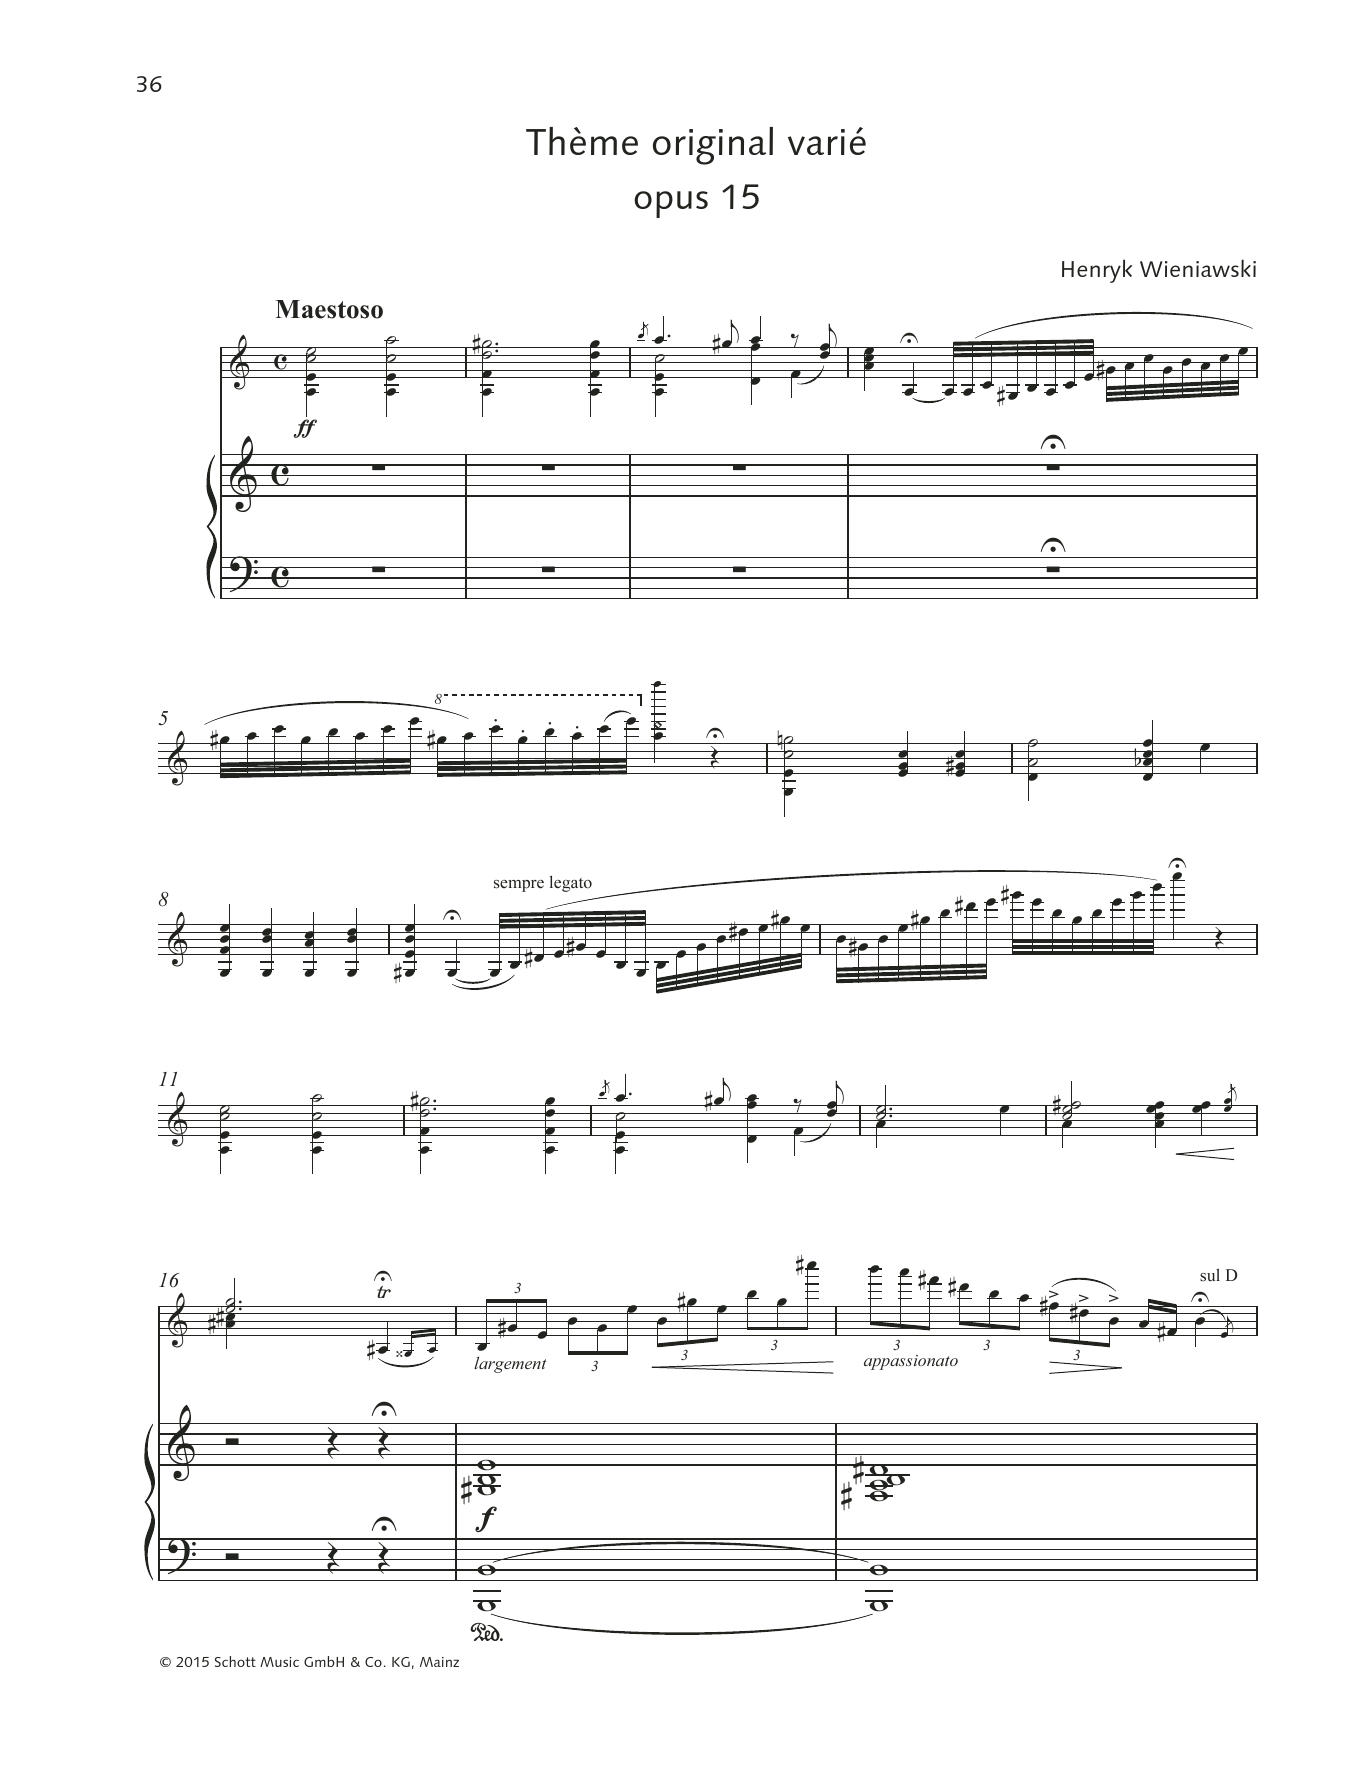 Thme original vari (String Solo) von Henryk Wieniawski